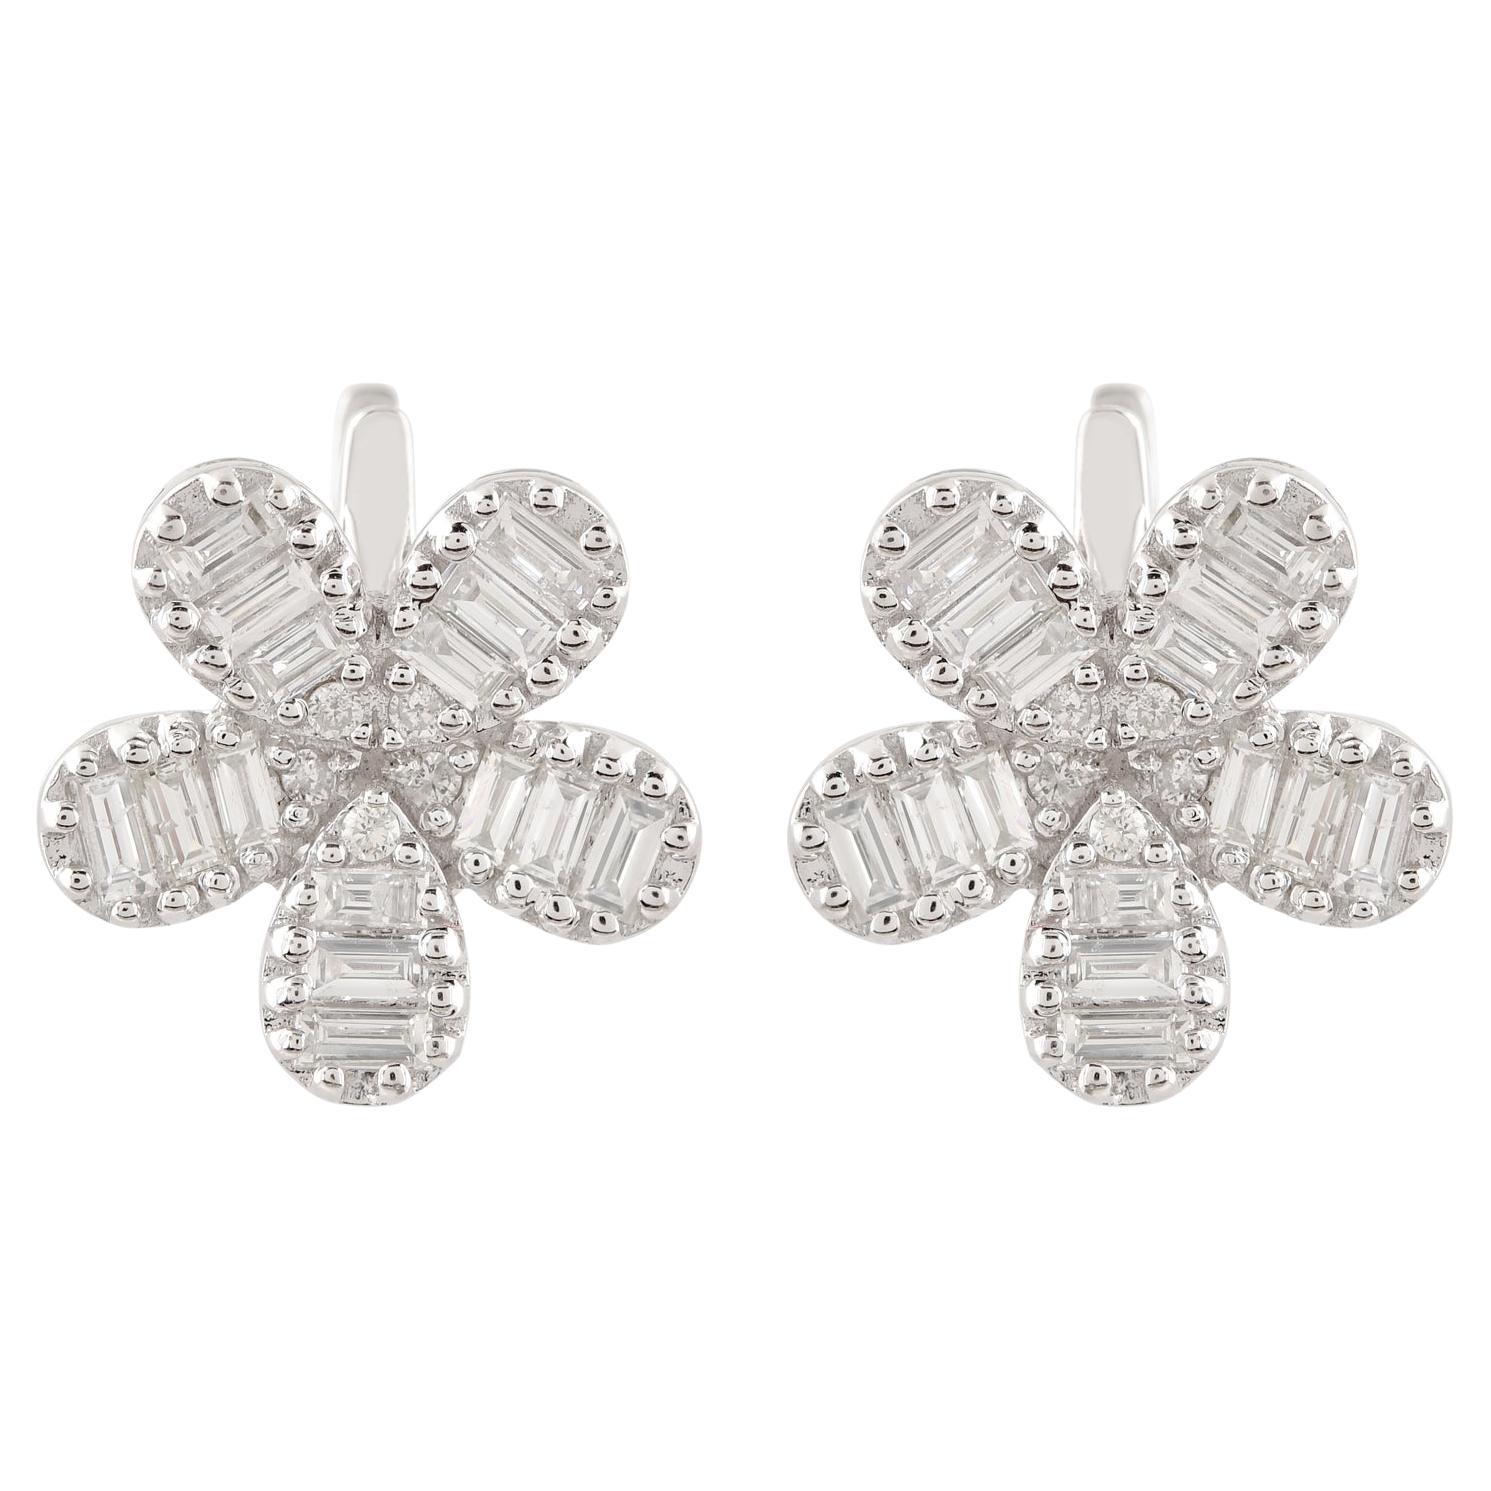 1.01 Carat Baguette Diamond Flower Stud Earrings Solid 18k White Gold Jewelry